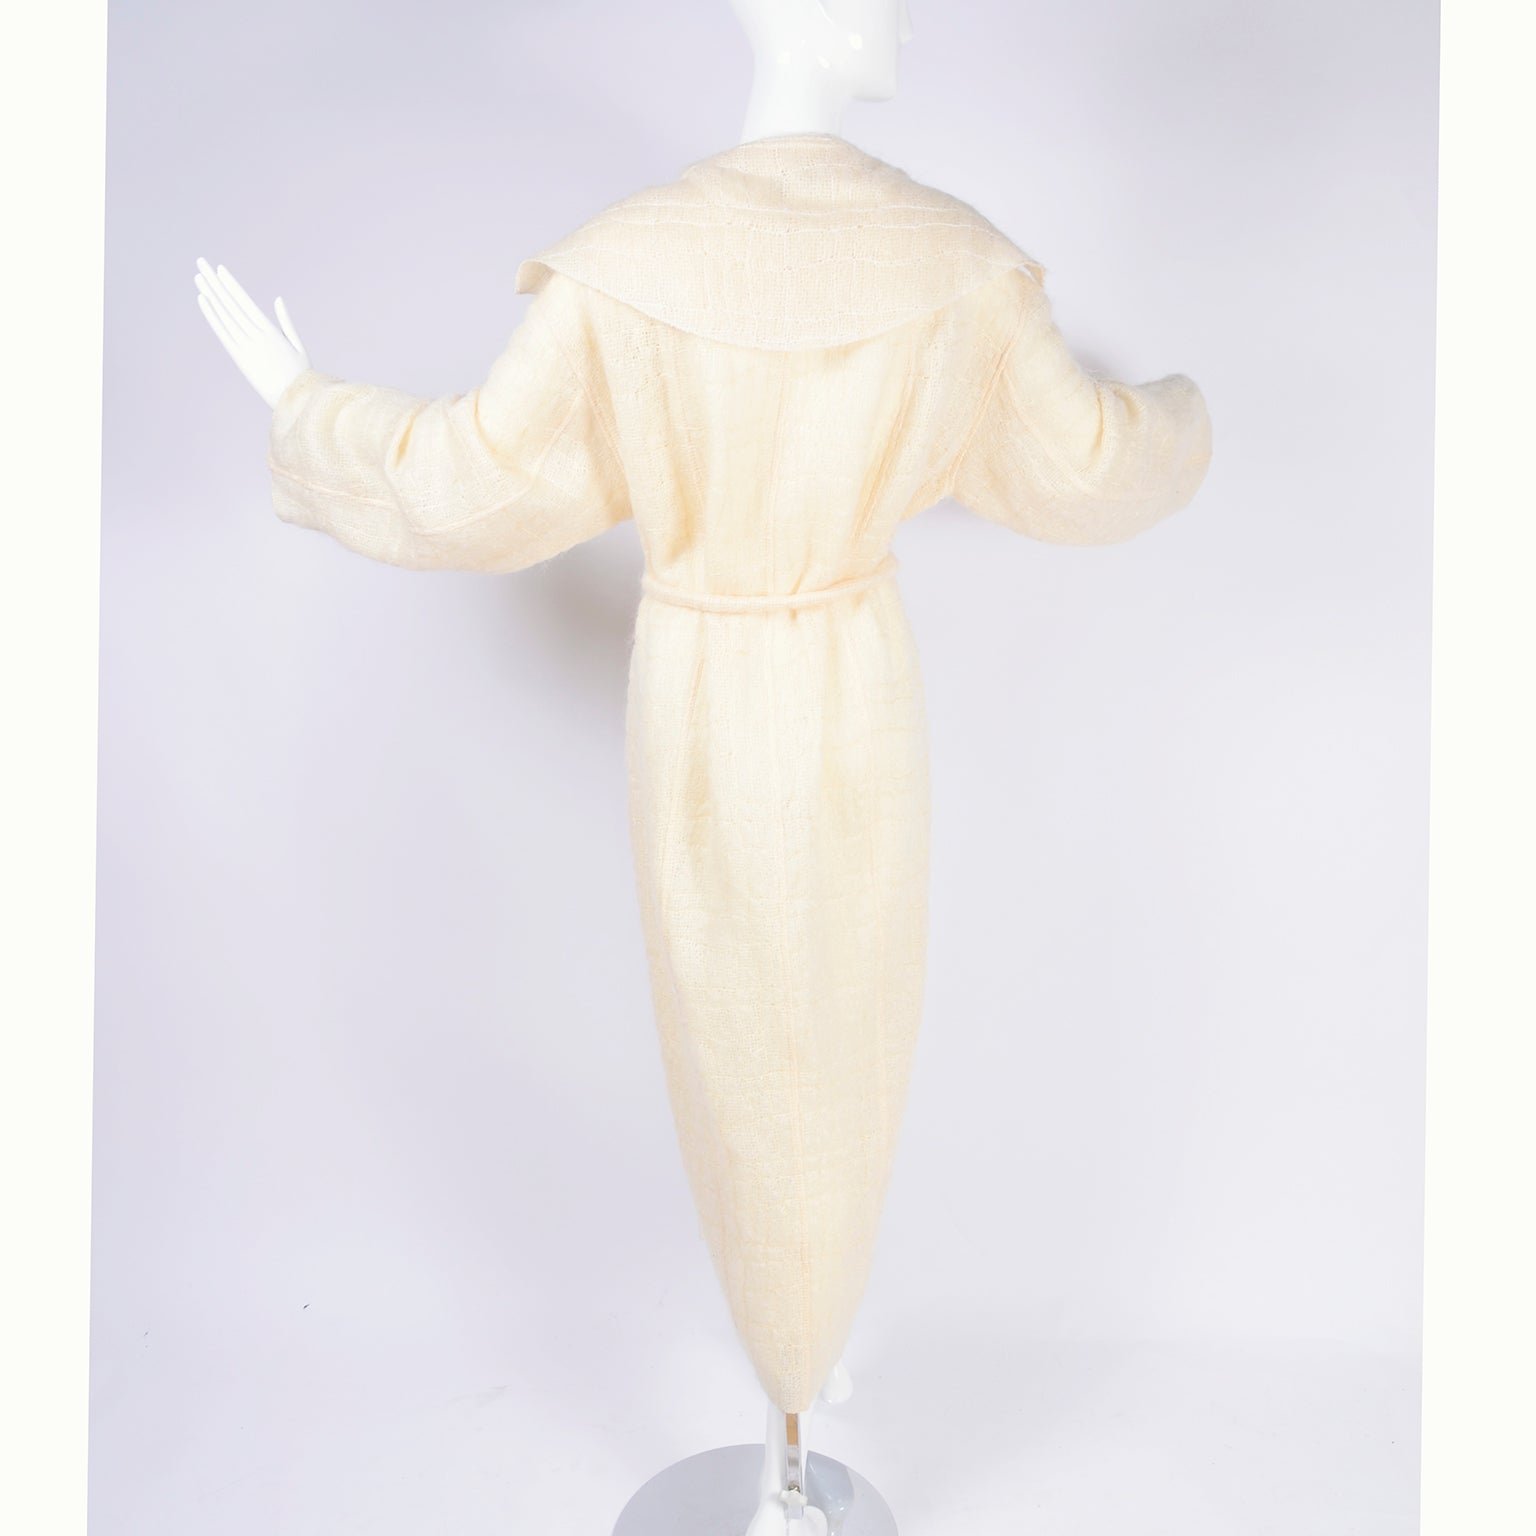 Romeo Gigli 1989/90 Sculptural Bodycon Dress